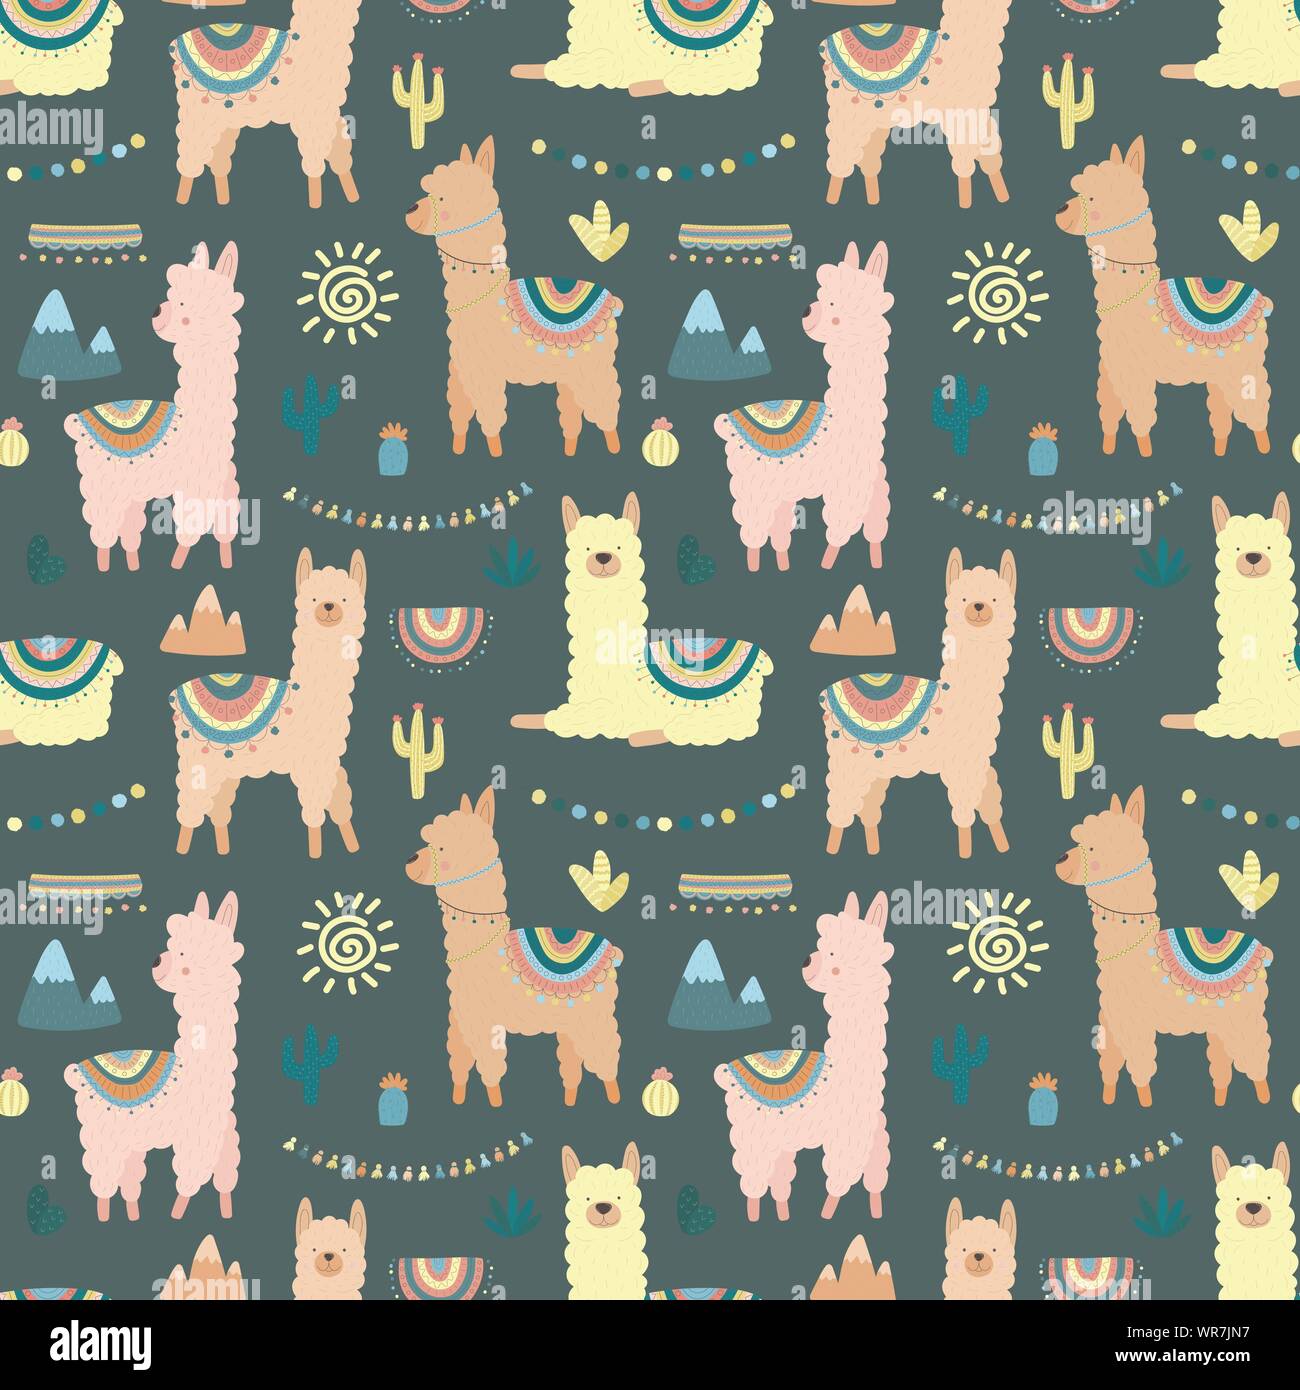 Nahtlose Muster mit mehrfarbigen Lamas oder Alpakas, Berge, Kakteen, Garland und Sonne auf einem dunklen Hintergrund. Bild für Kinder, Textil, Kleidung, c Stock Vektor